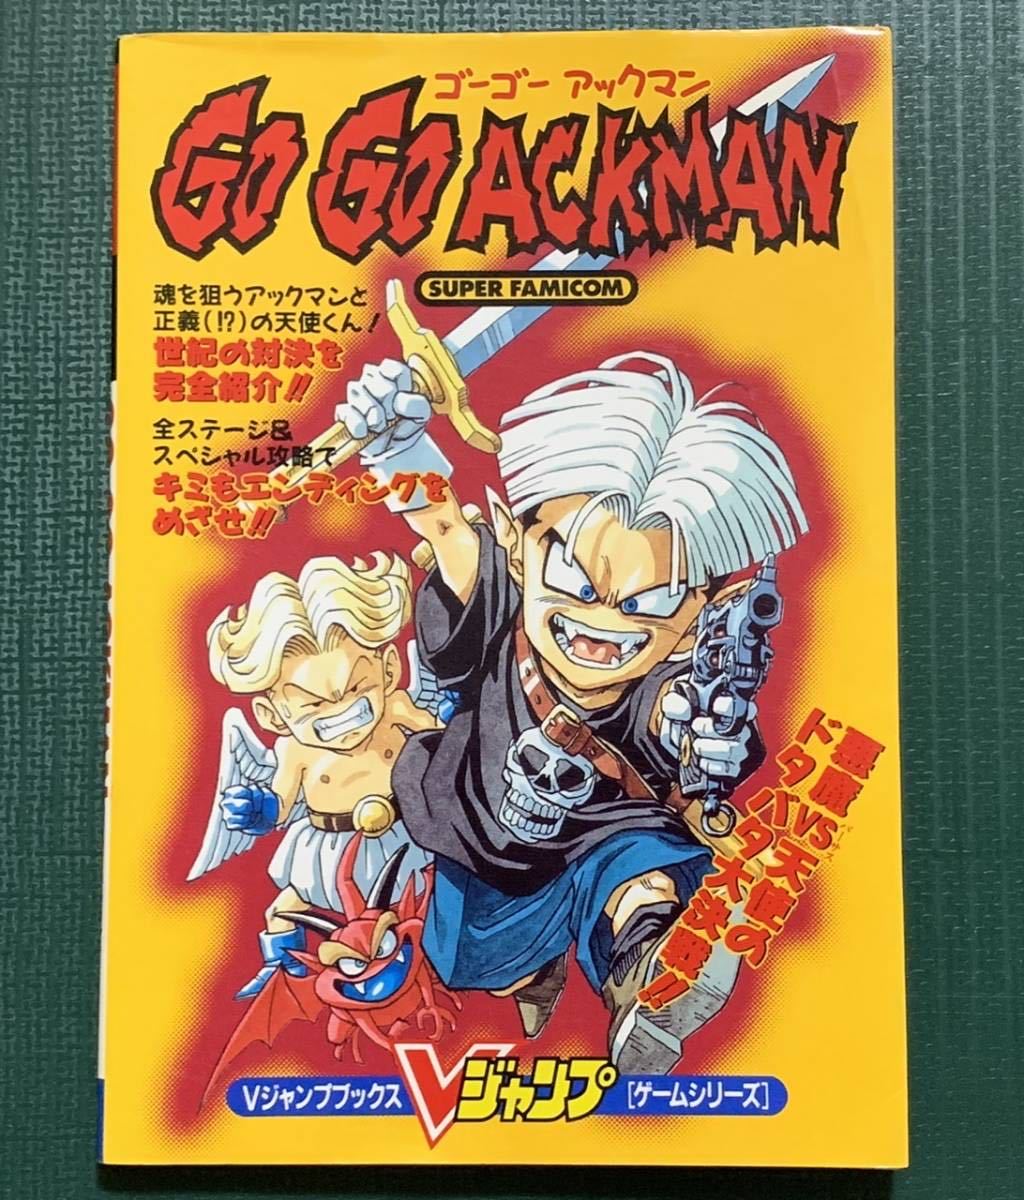 SFC攻略本 GO GO ACKMAN（ゴーゴーアックマン） Vジャンプブックス ゲームシリーズ 集英社 スーパーファミコン